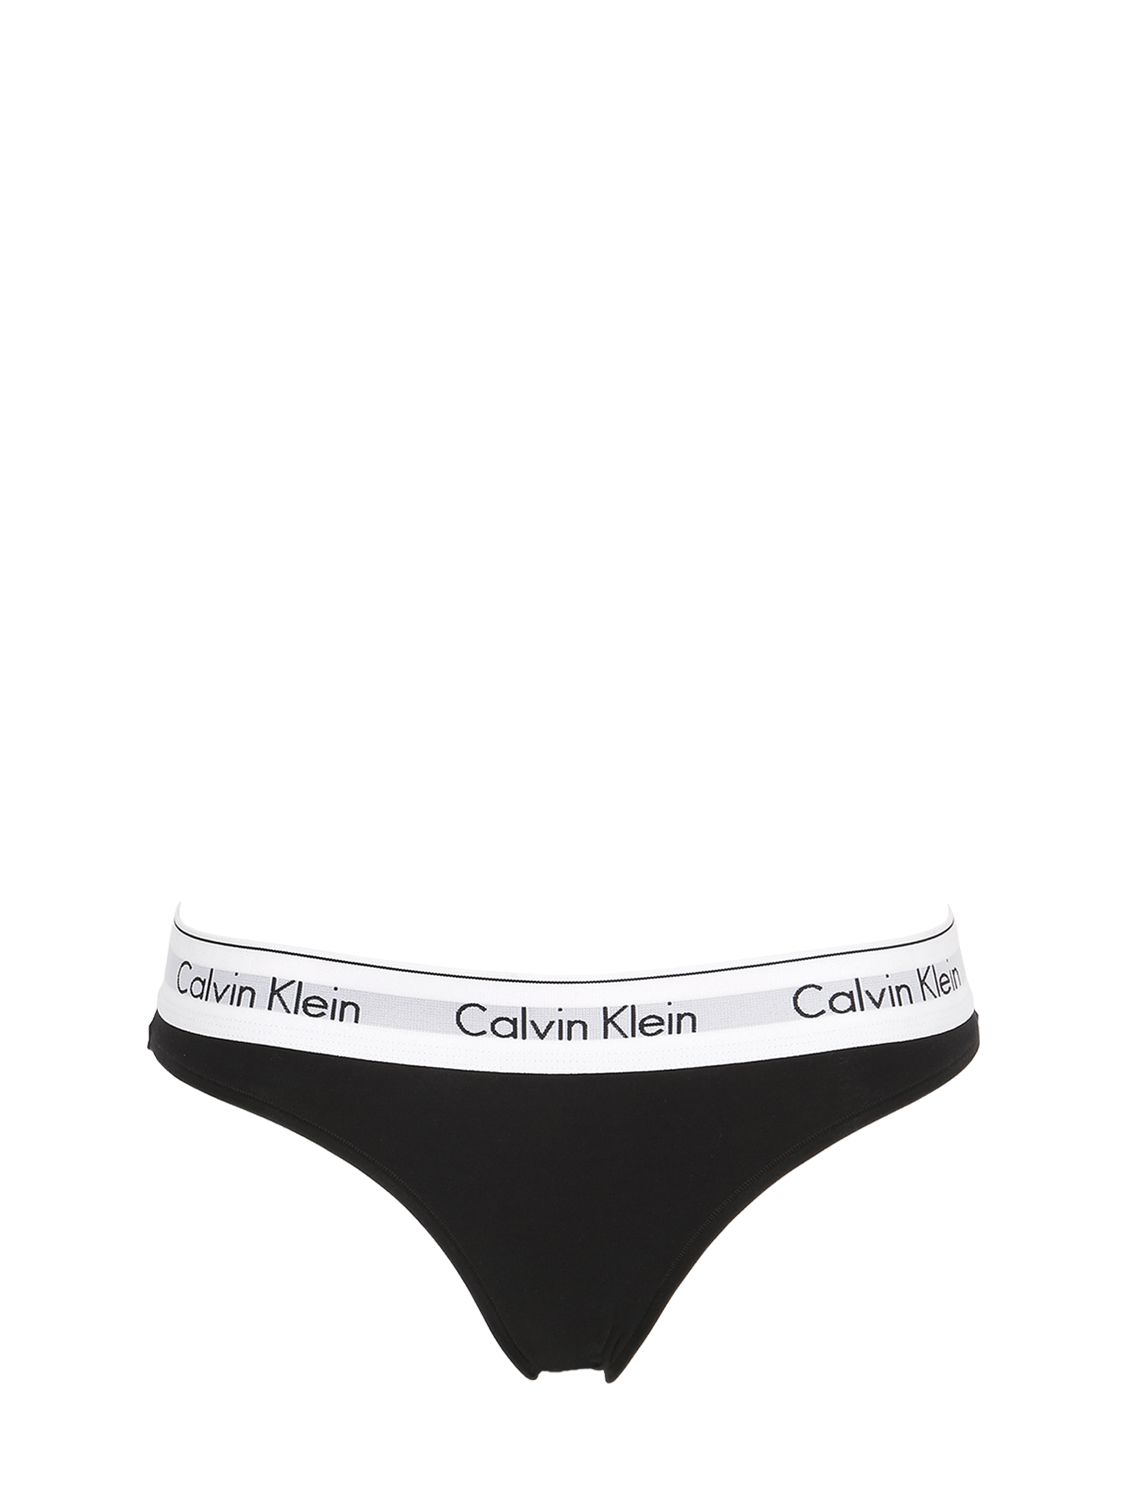 calvin klein underwear soldes